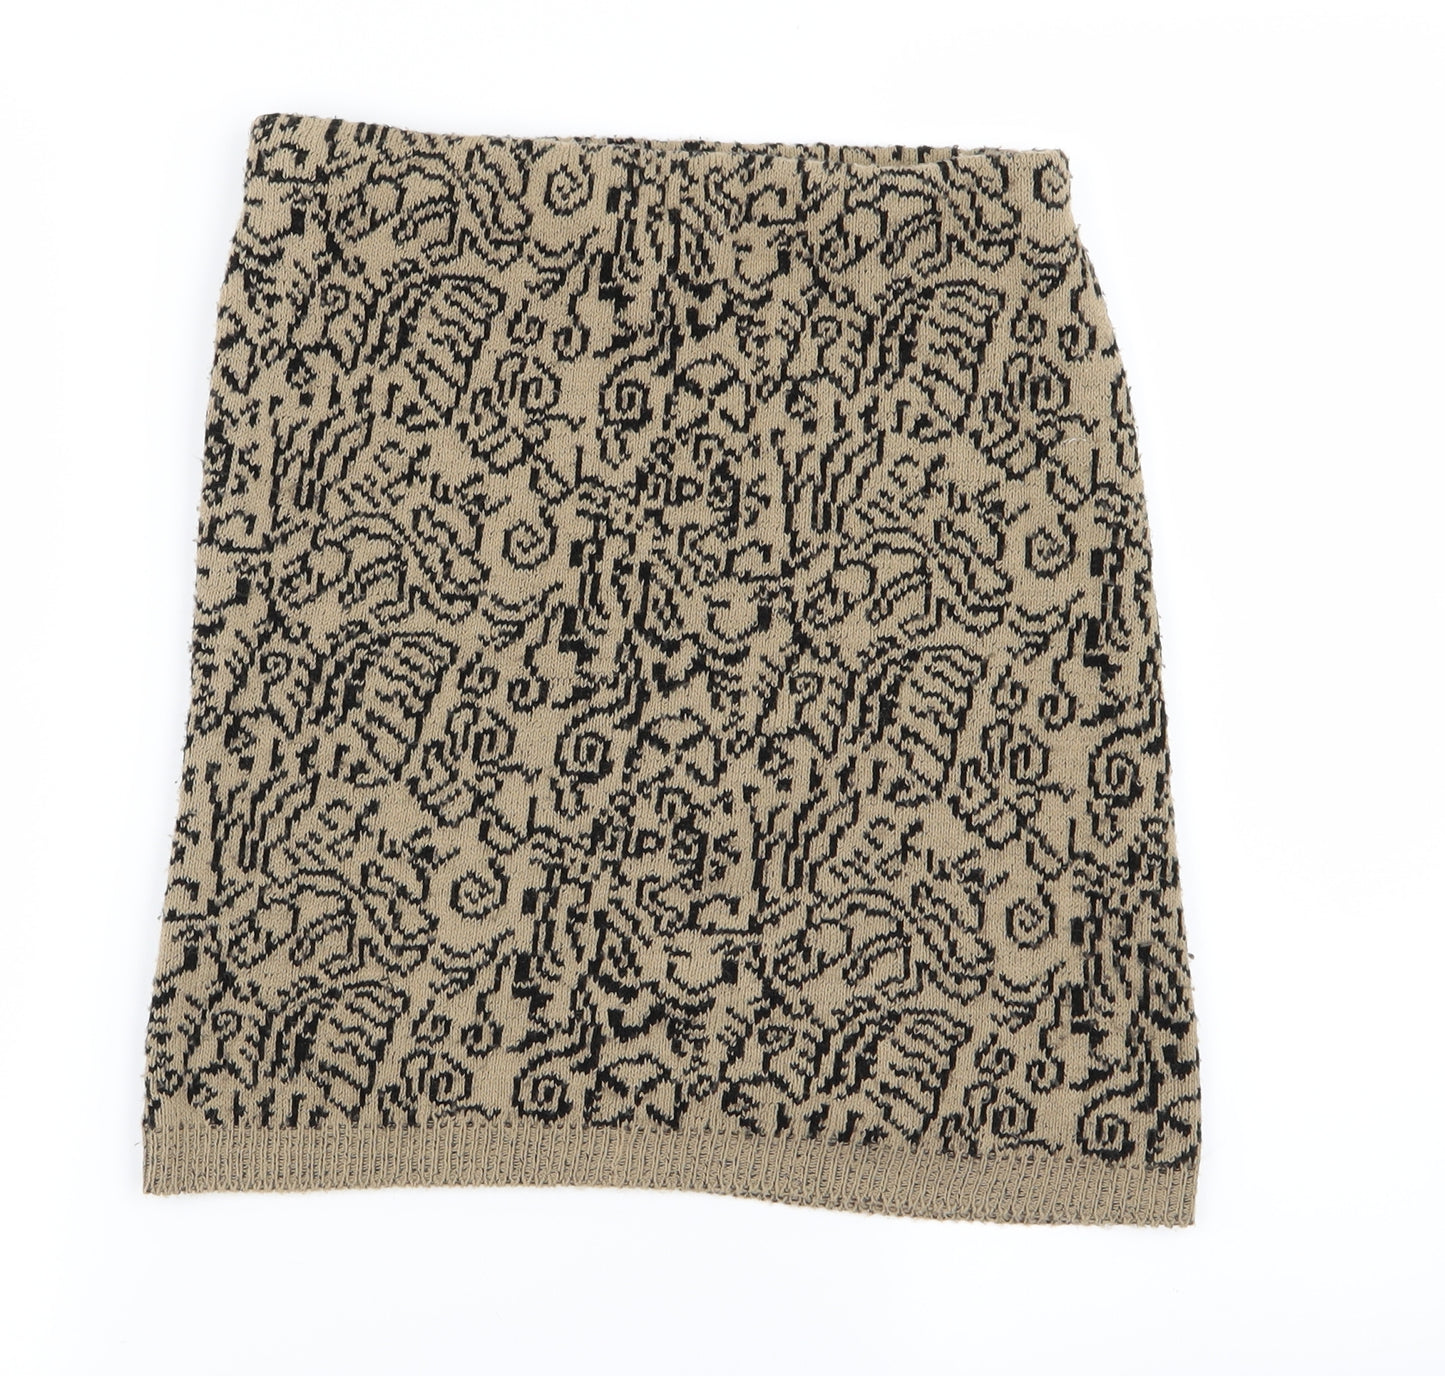 Preworn Womens Beige Geometric  Mini Skirt Size S  - Stretch waistband